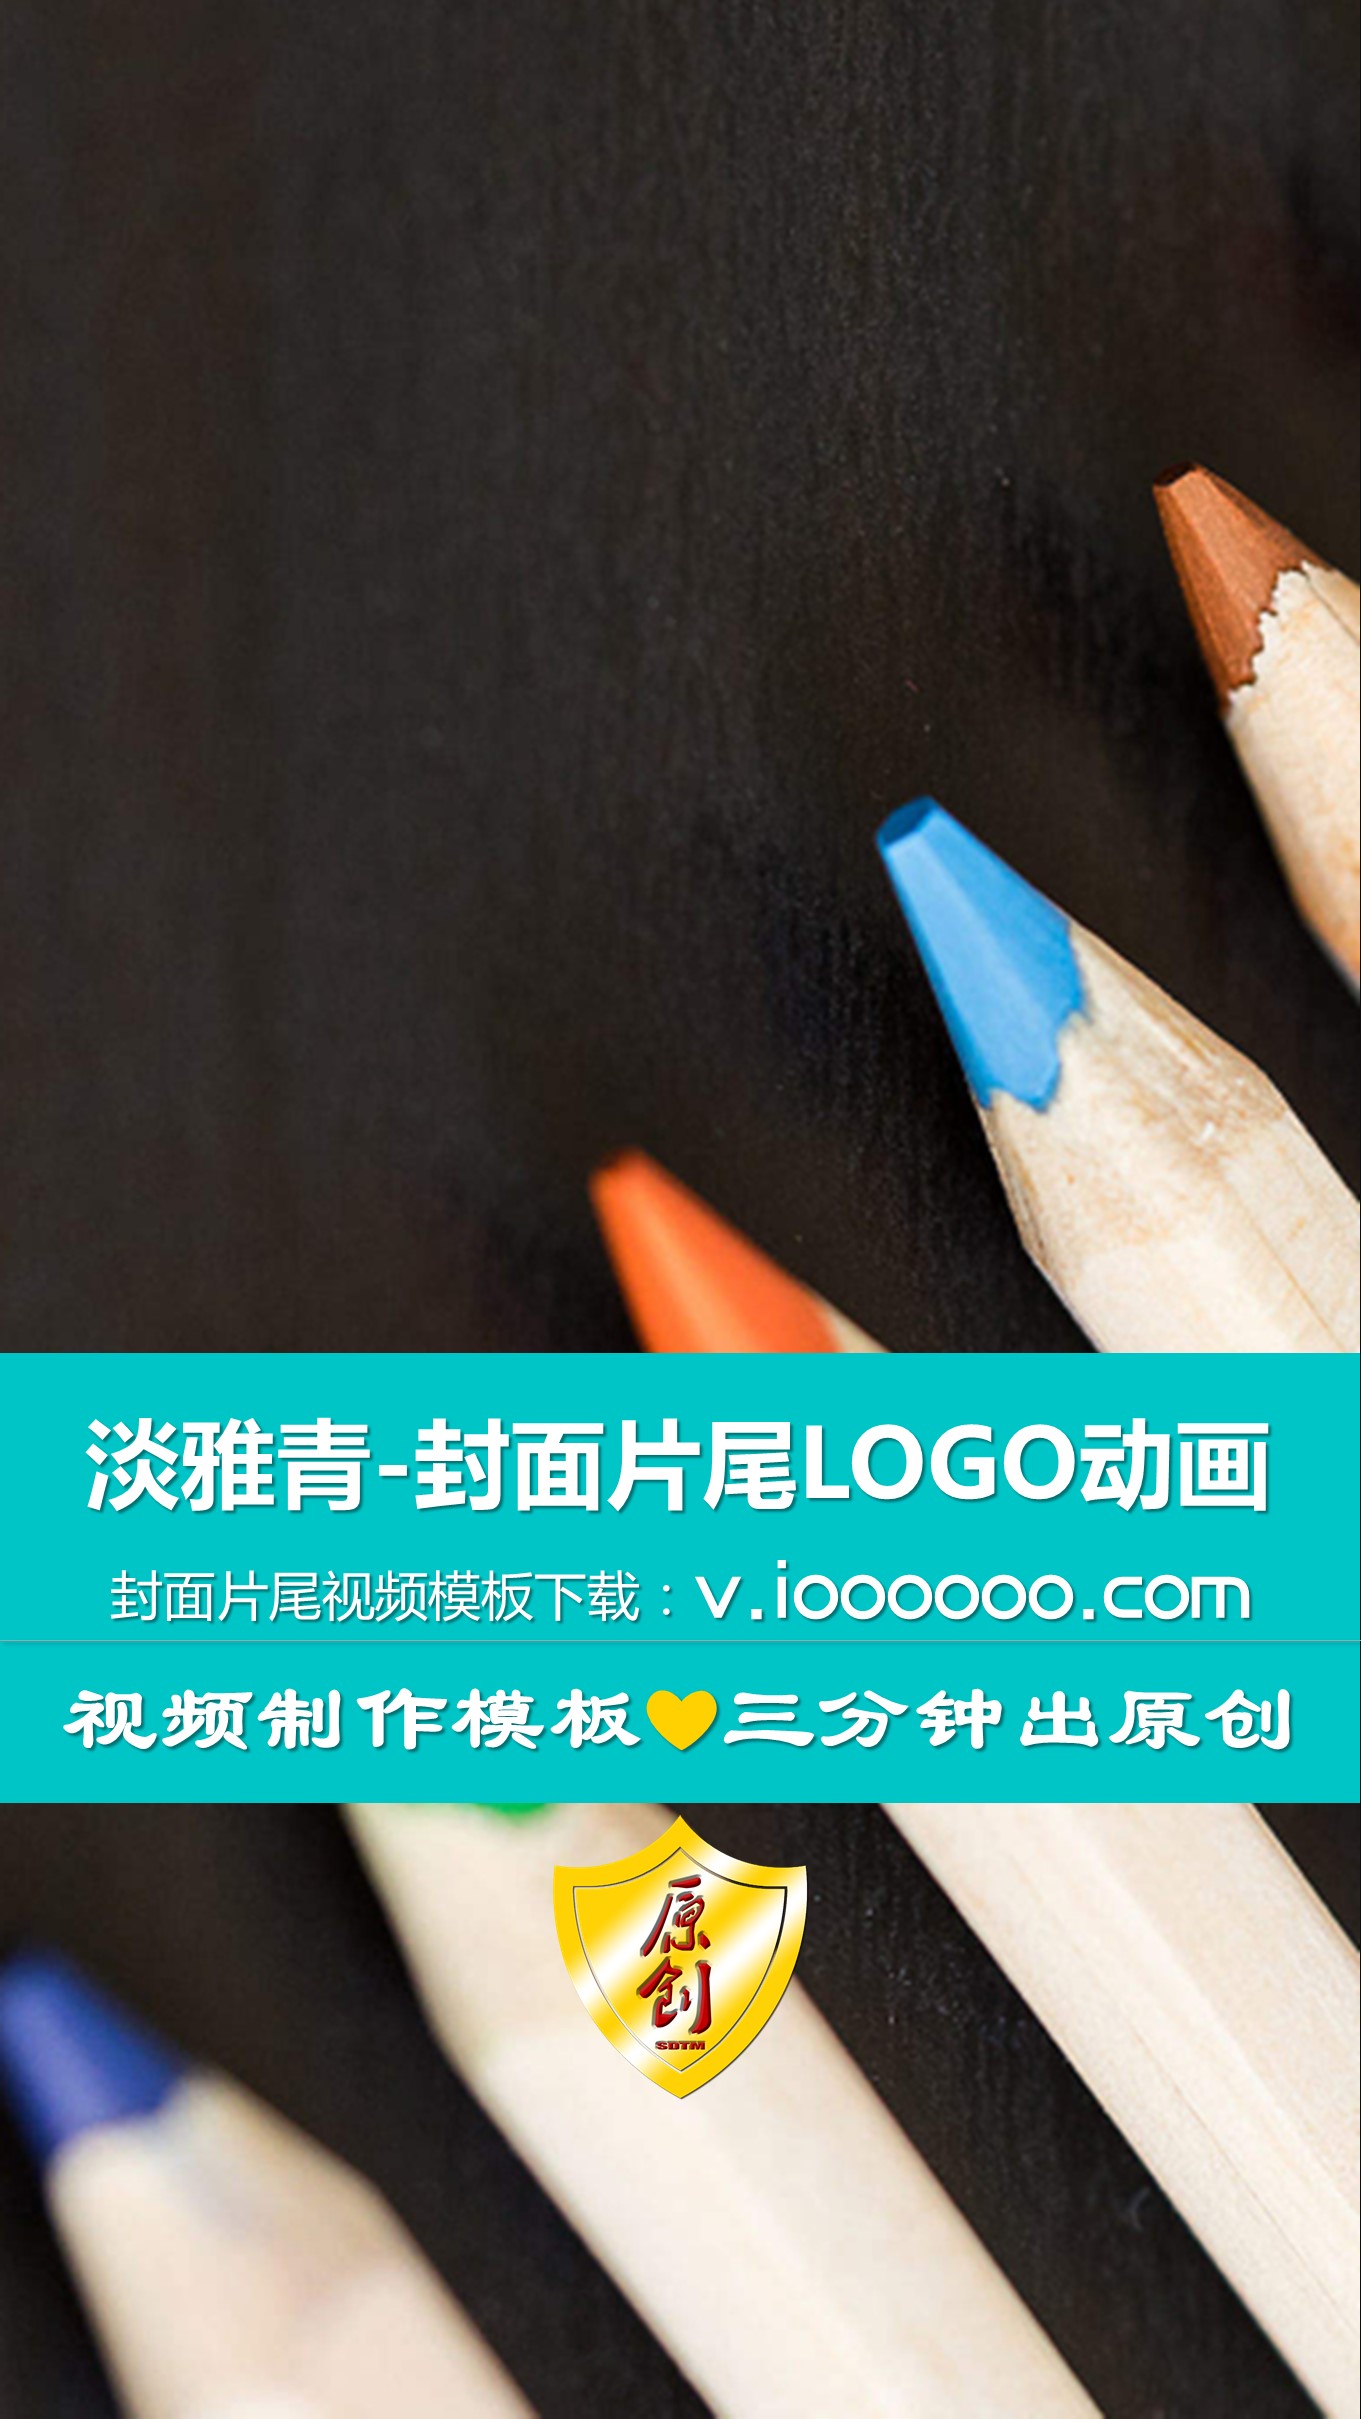 淡雅青片头片尾封面LOGO动画视频PPT模板竖版 (1).JPG